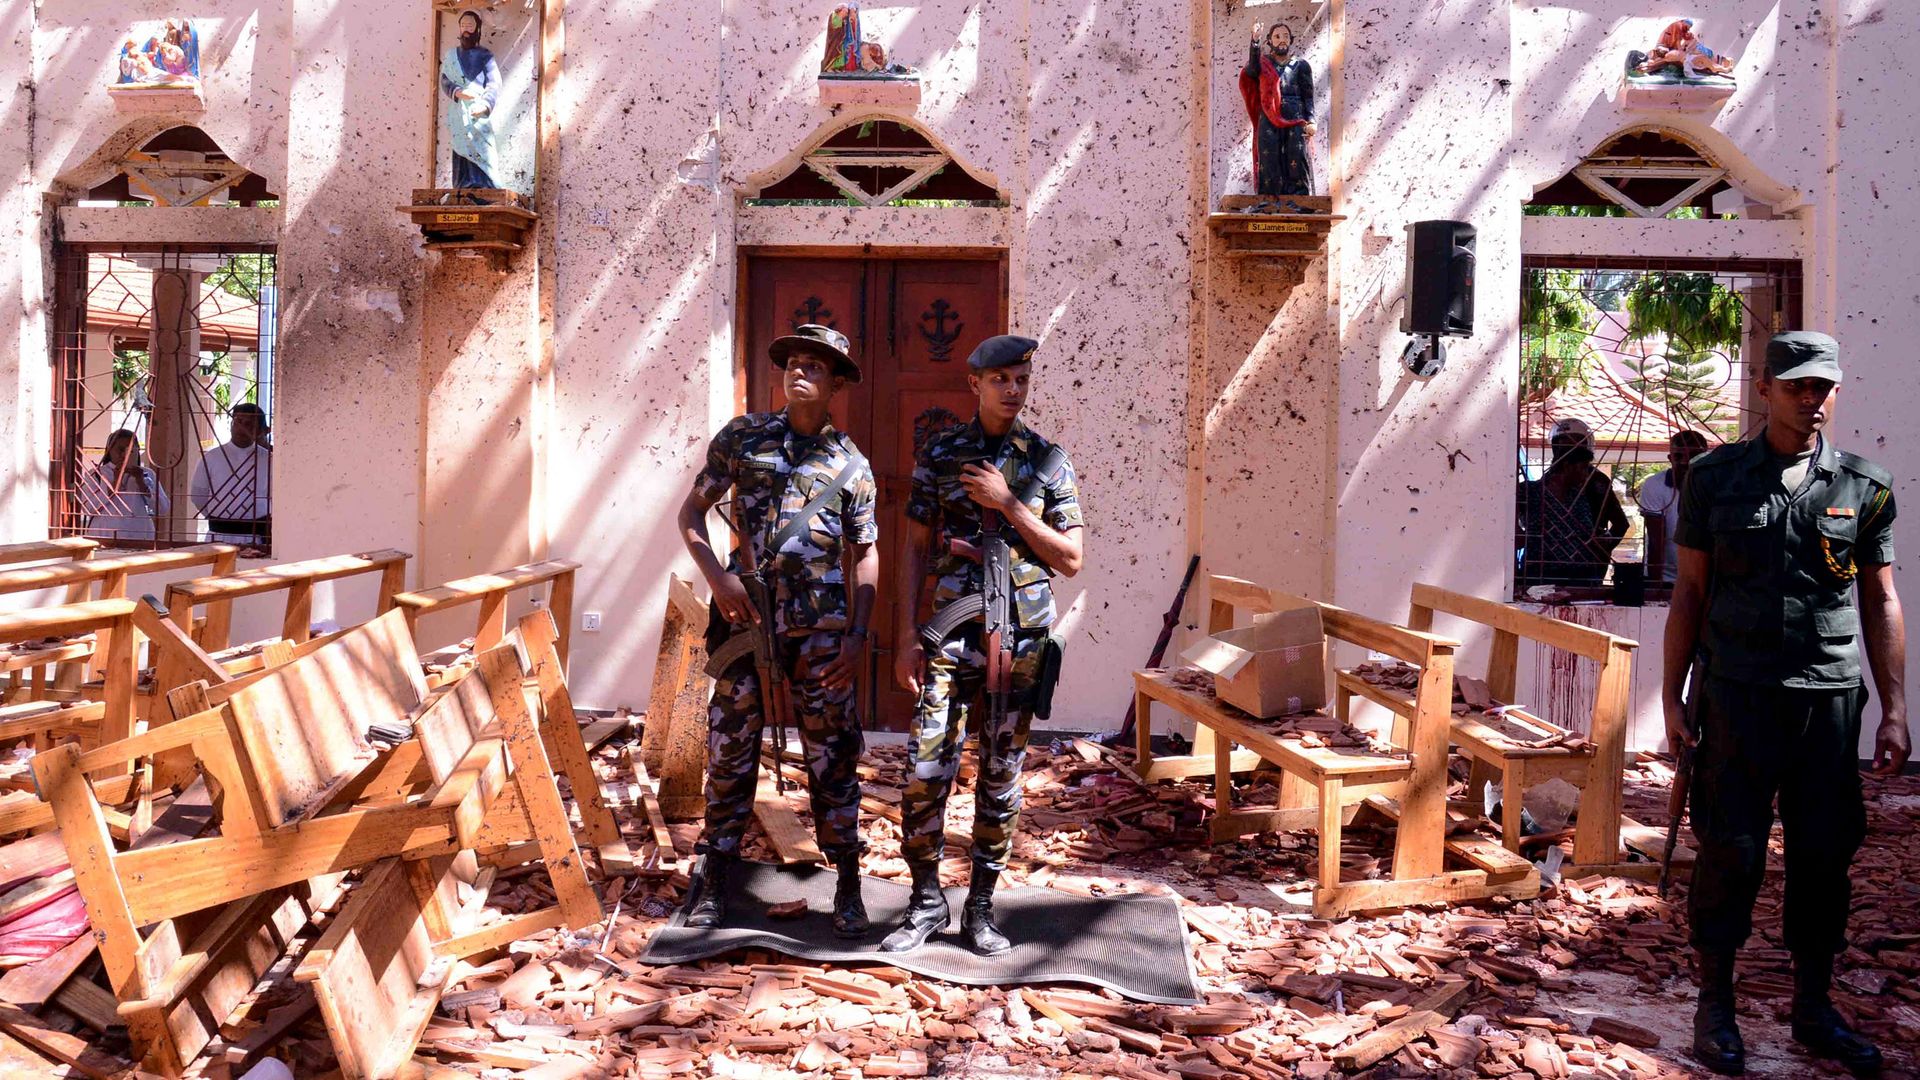  Sri Lankan soldiers look on inside the St Sebastian's Church at Katuwapitiya in Negombo on Sunday.